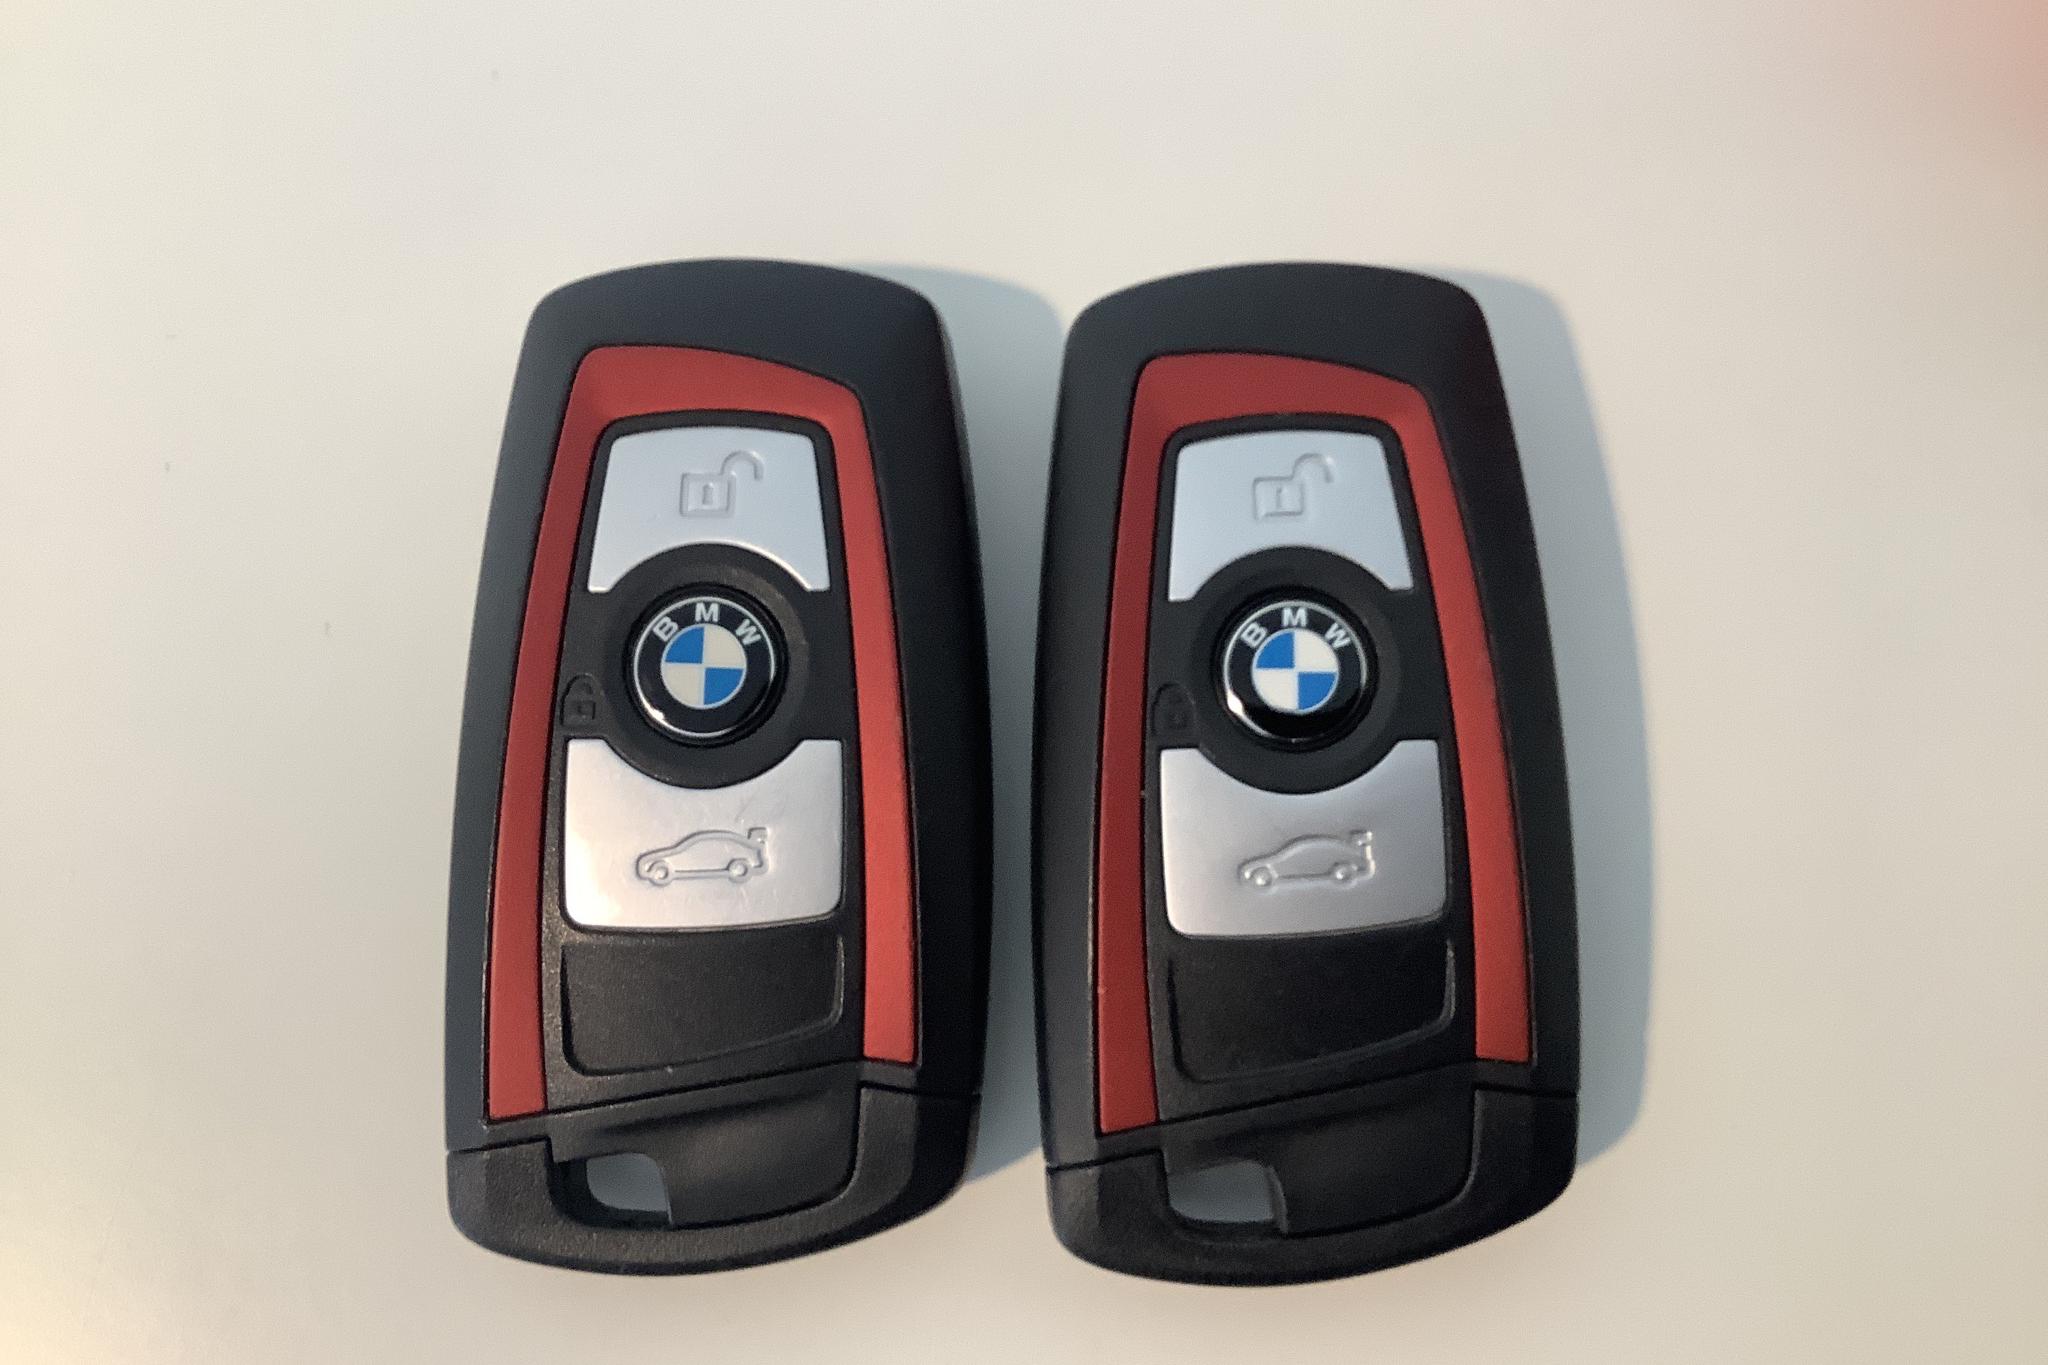 BMW 320d xDrive Touring, F31 (190hk) - 10 717 mil - Automat - blå - 2019